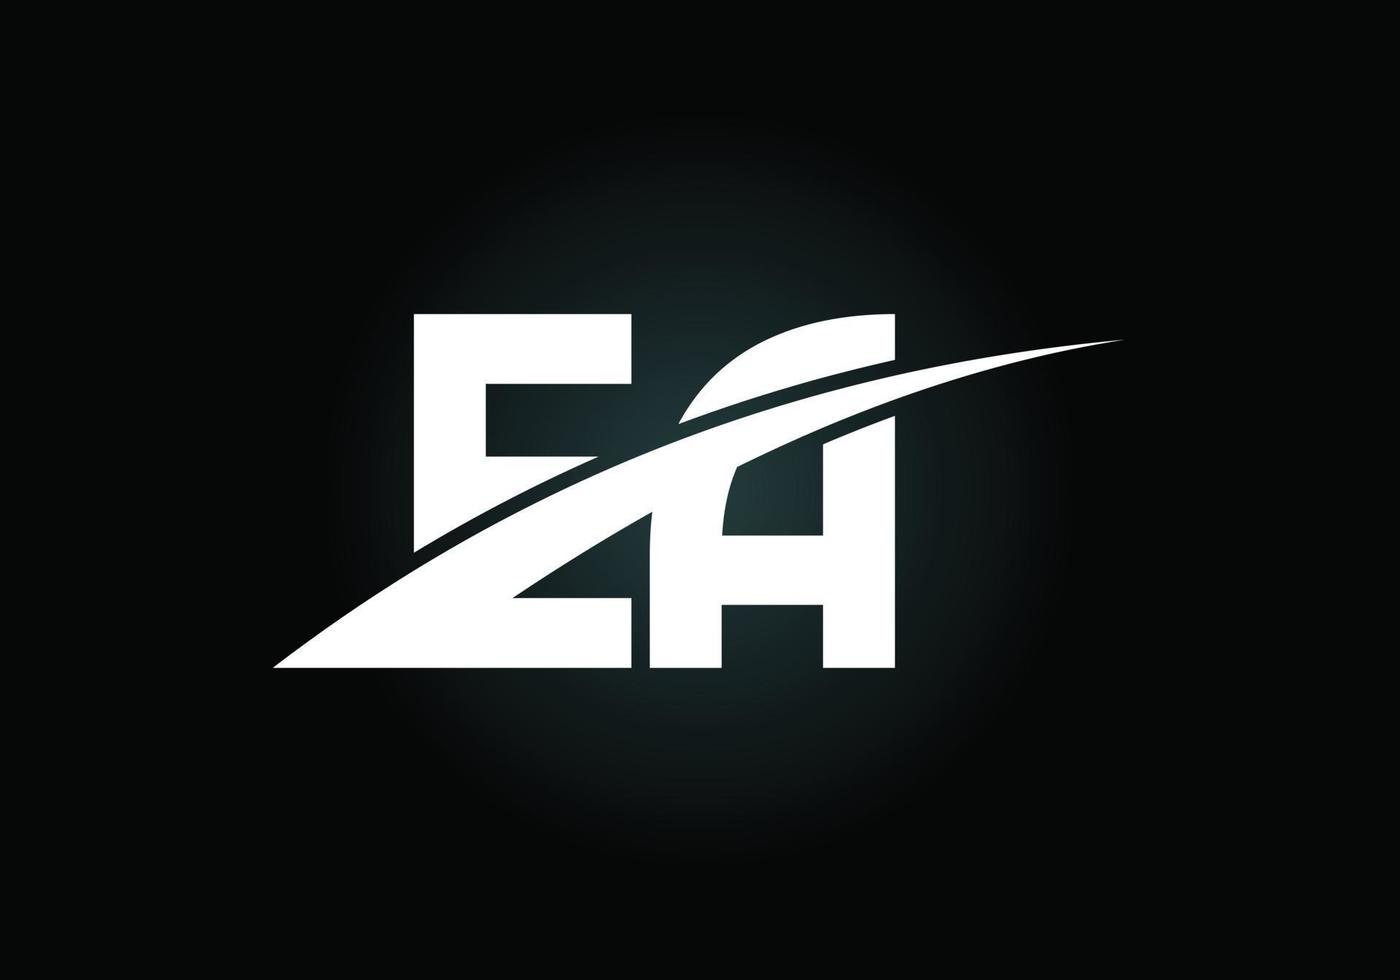 Anfangsbuchstabe EA-Logo-Design-Vektor. grafisches alphabetsymbol für unternehmensidentität vektor